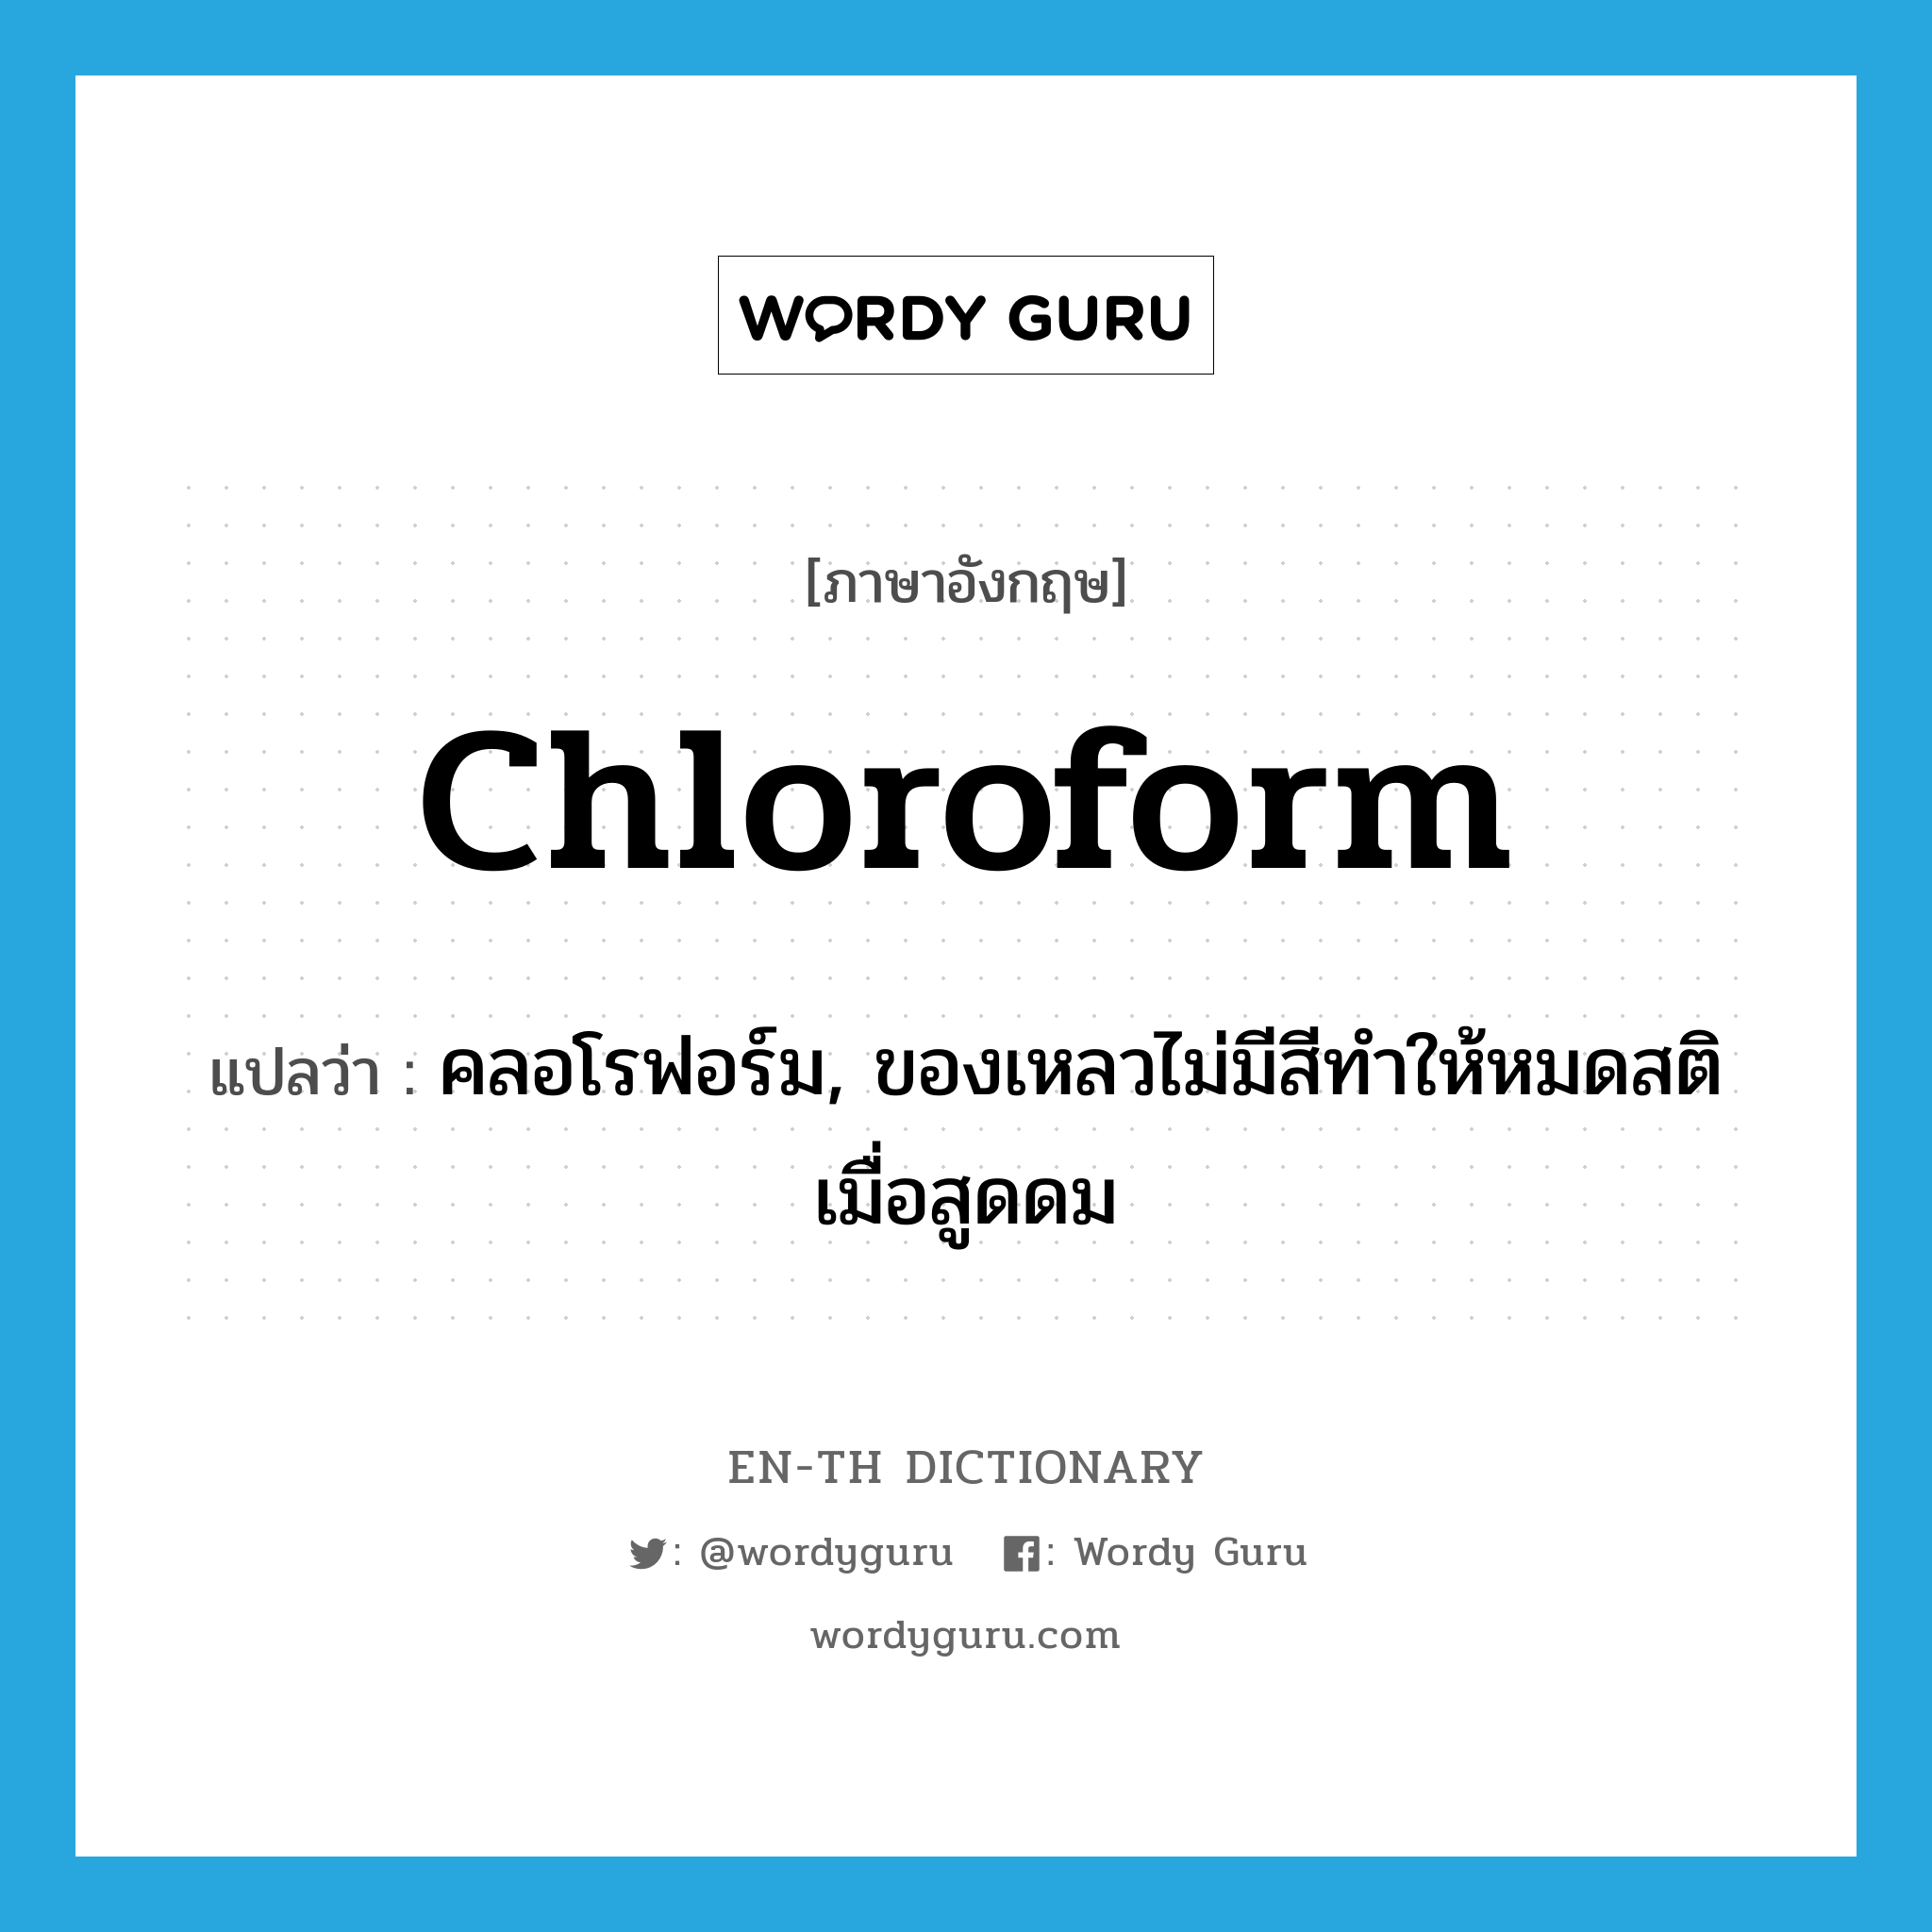 คลอโรฟอร์ม, ของเหลวไม่มีสีทำให้หมดสติเมื่อสูดดม ภาษาอังกฤษ?, คำศัพท์ภาษาอังกฤษ คลอโรฟอร์ม, ของเหลวไม่มีสีทำให้หมดสติเมื่อสูดดม แปลว่า chloroform ประเภท N หมวด N